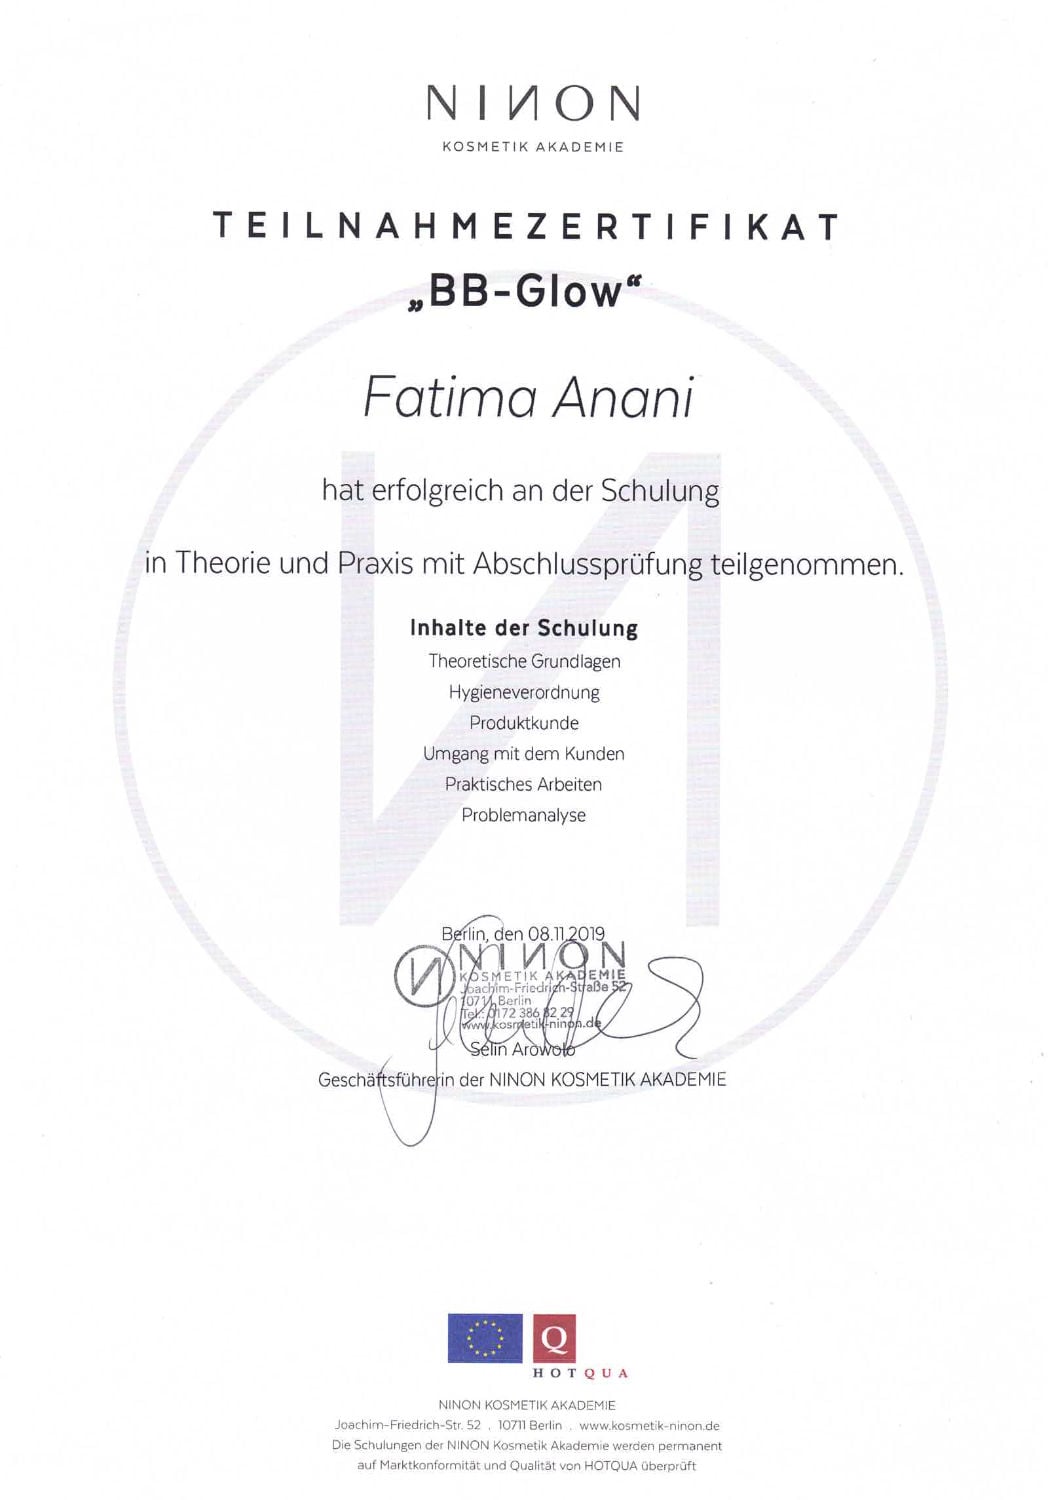 Zertifikat BB Glow von Ninon Kosmetik Akademie für Fatima Anani